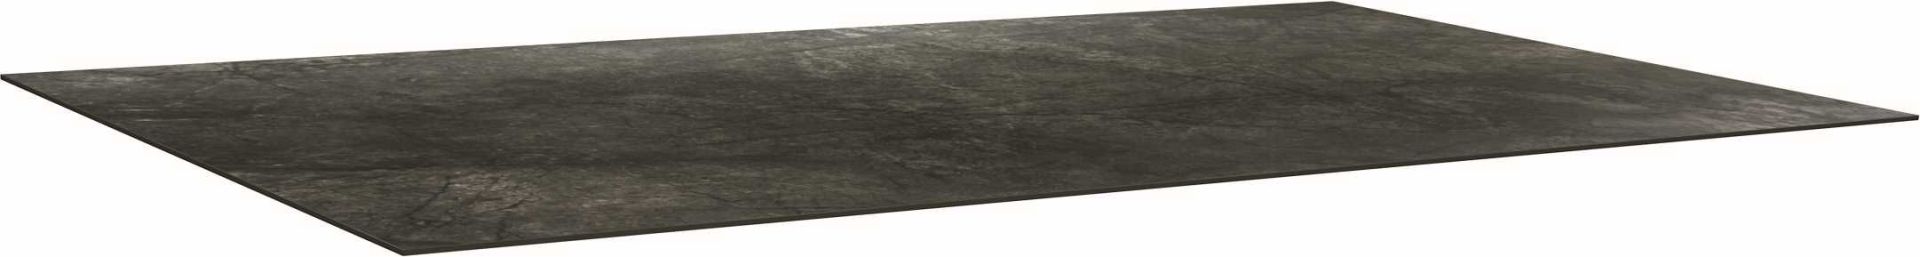 Stern Tischplatte Silverstar 2.0 Dekor Dark Marble ca.160 x 90 cm 102163